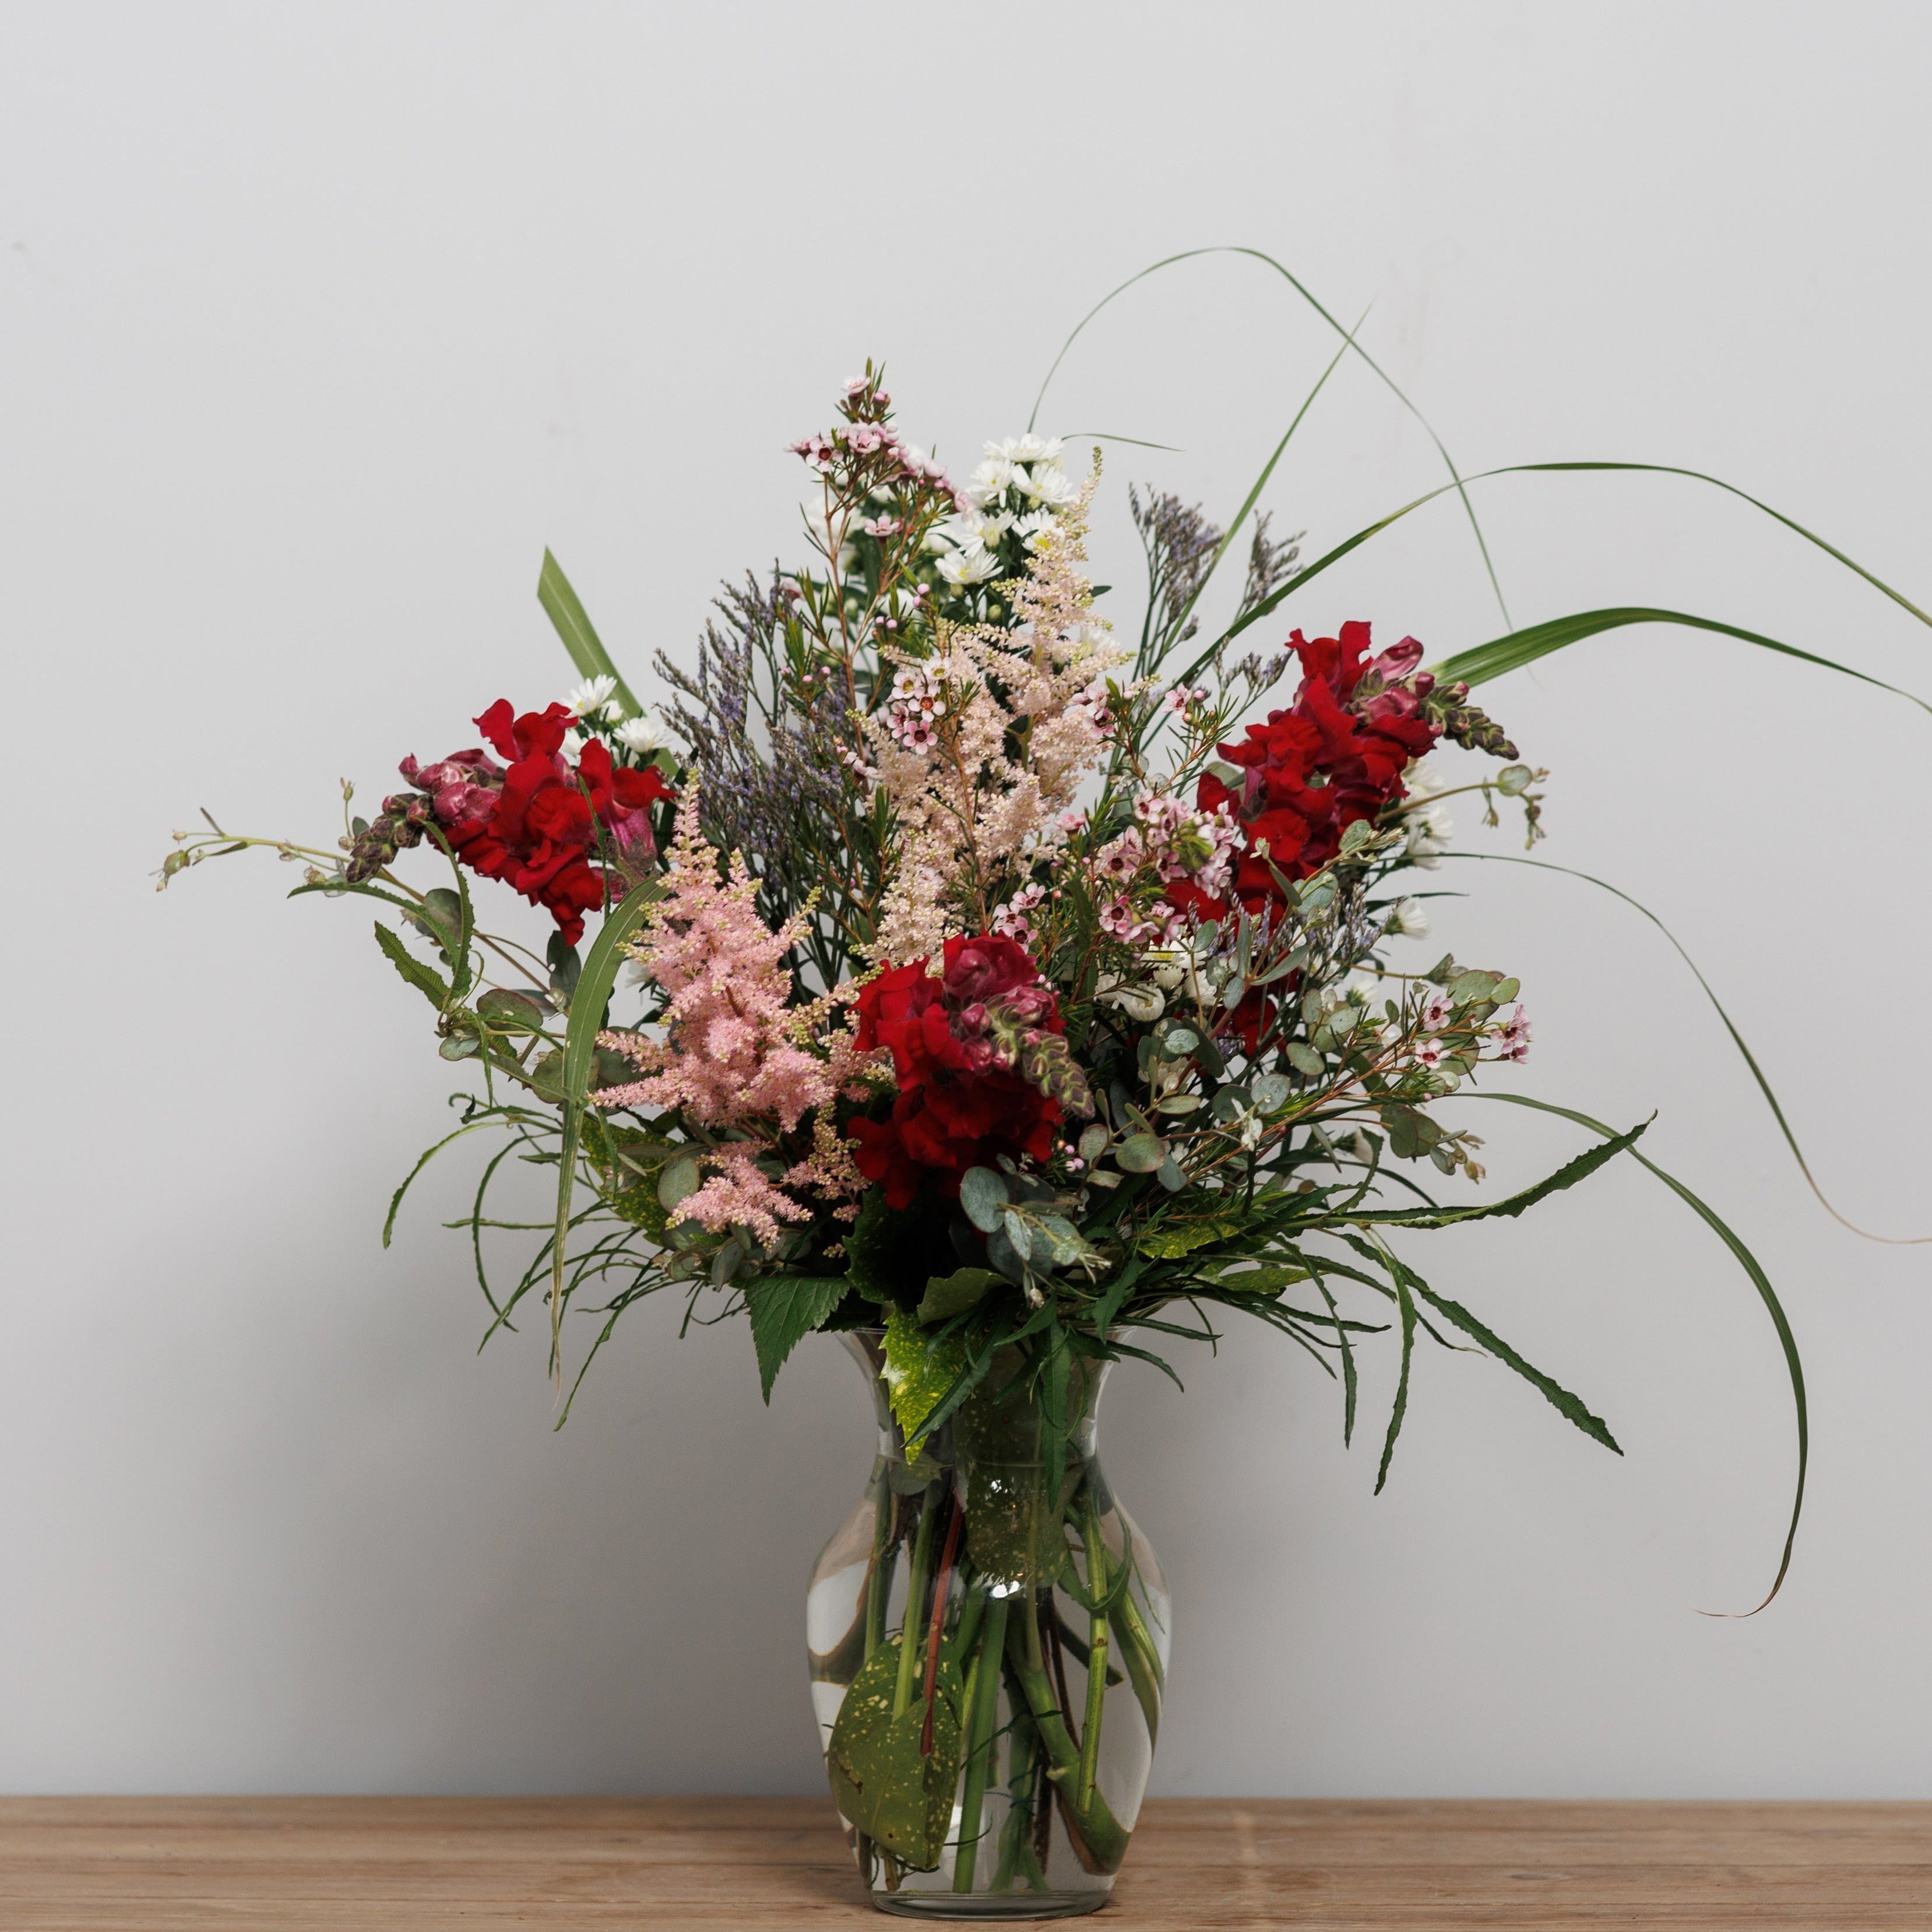 A wildflower vase arrangement